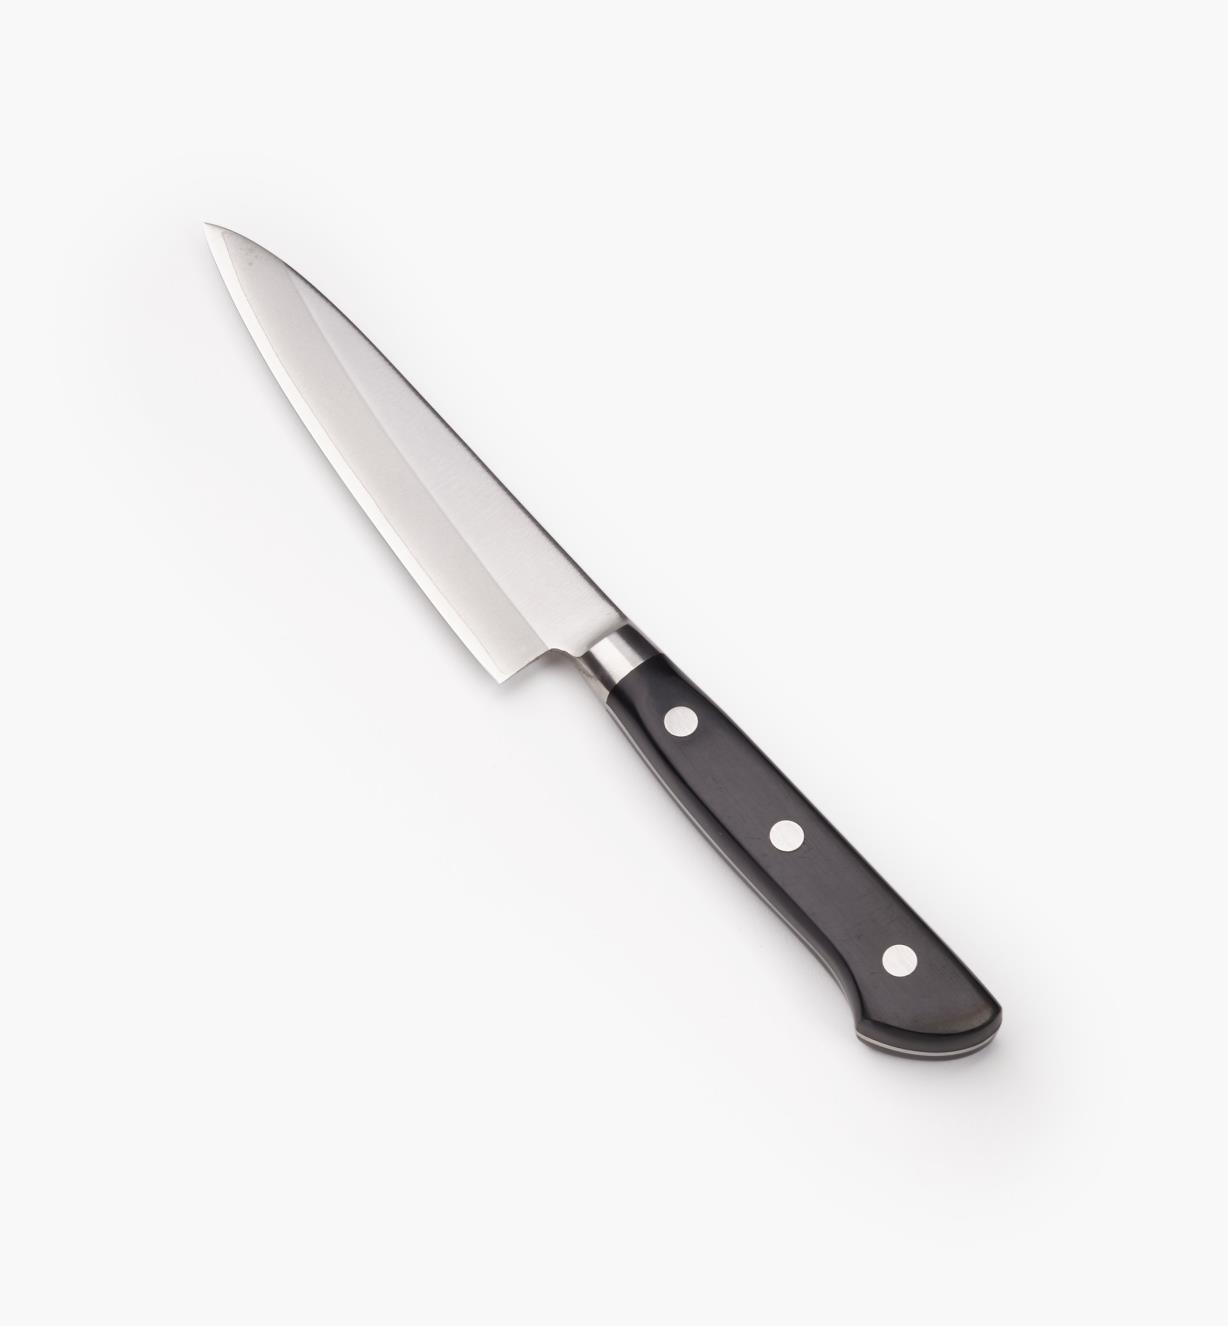 60W0505 - 120mm (4 3/4") Utility Knife